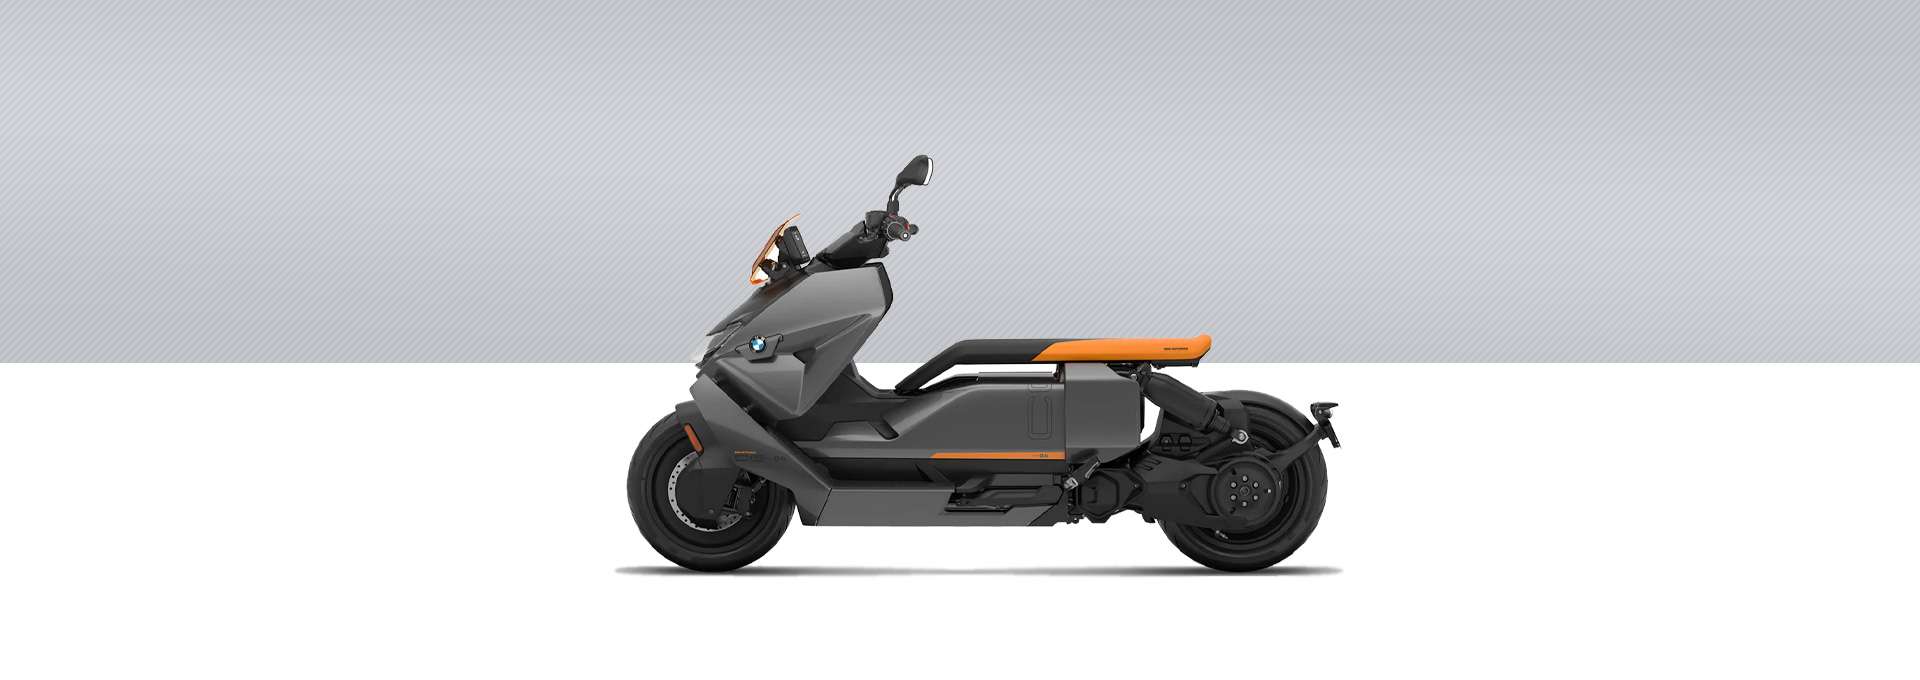 BMW Motorrad Nueva CE 04